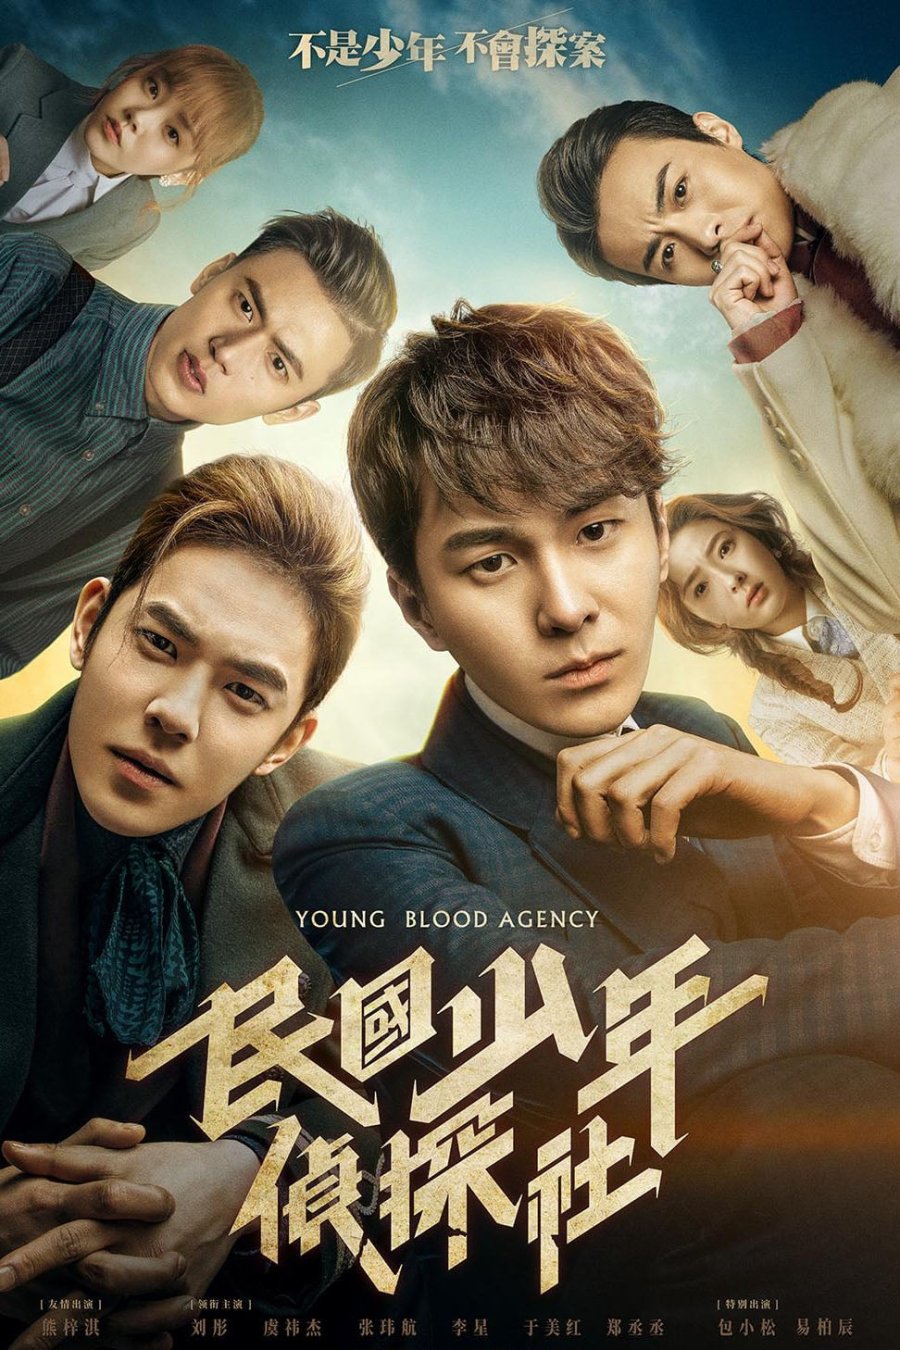 دانلود سریال چینی young blood agency 2019